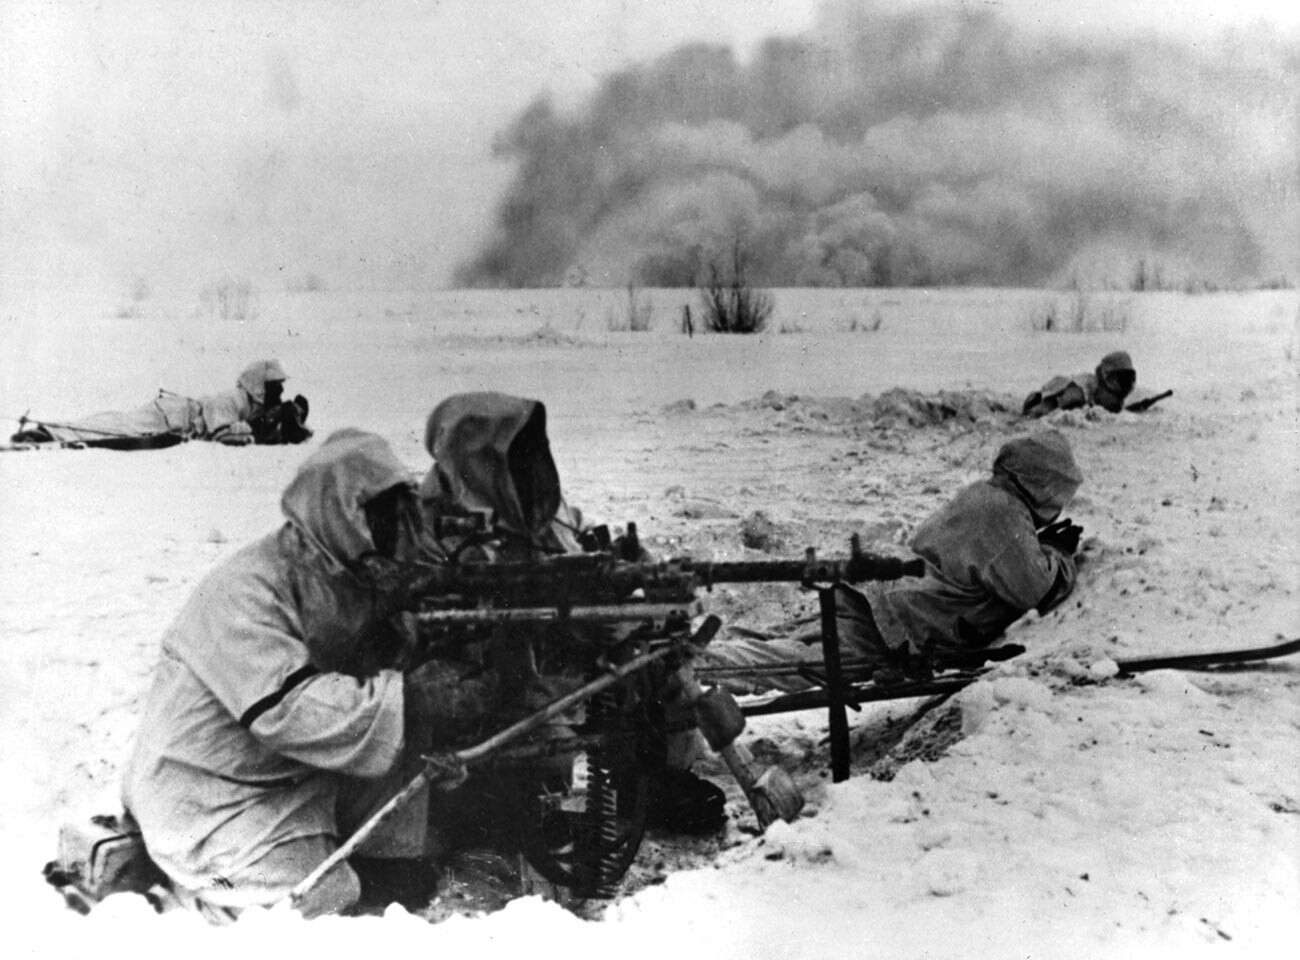 Soldados alemanes luchando en Stalingrado, diciembre de 1942.
